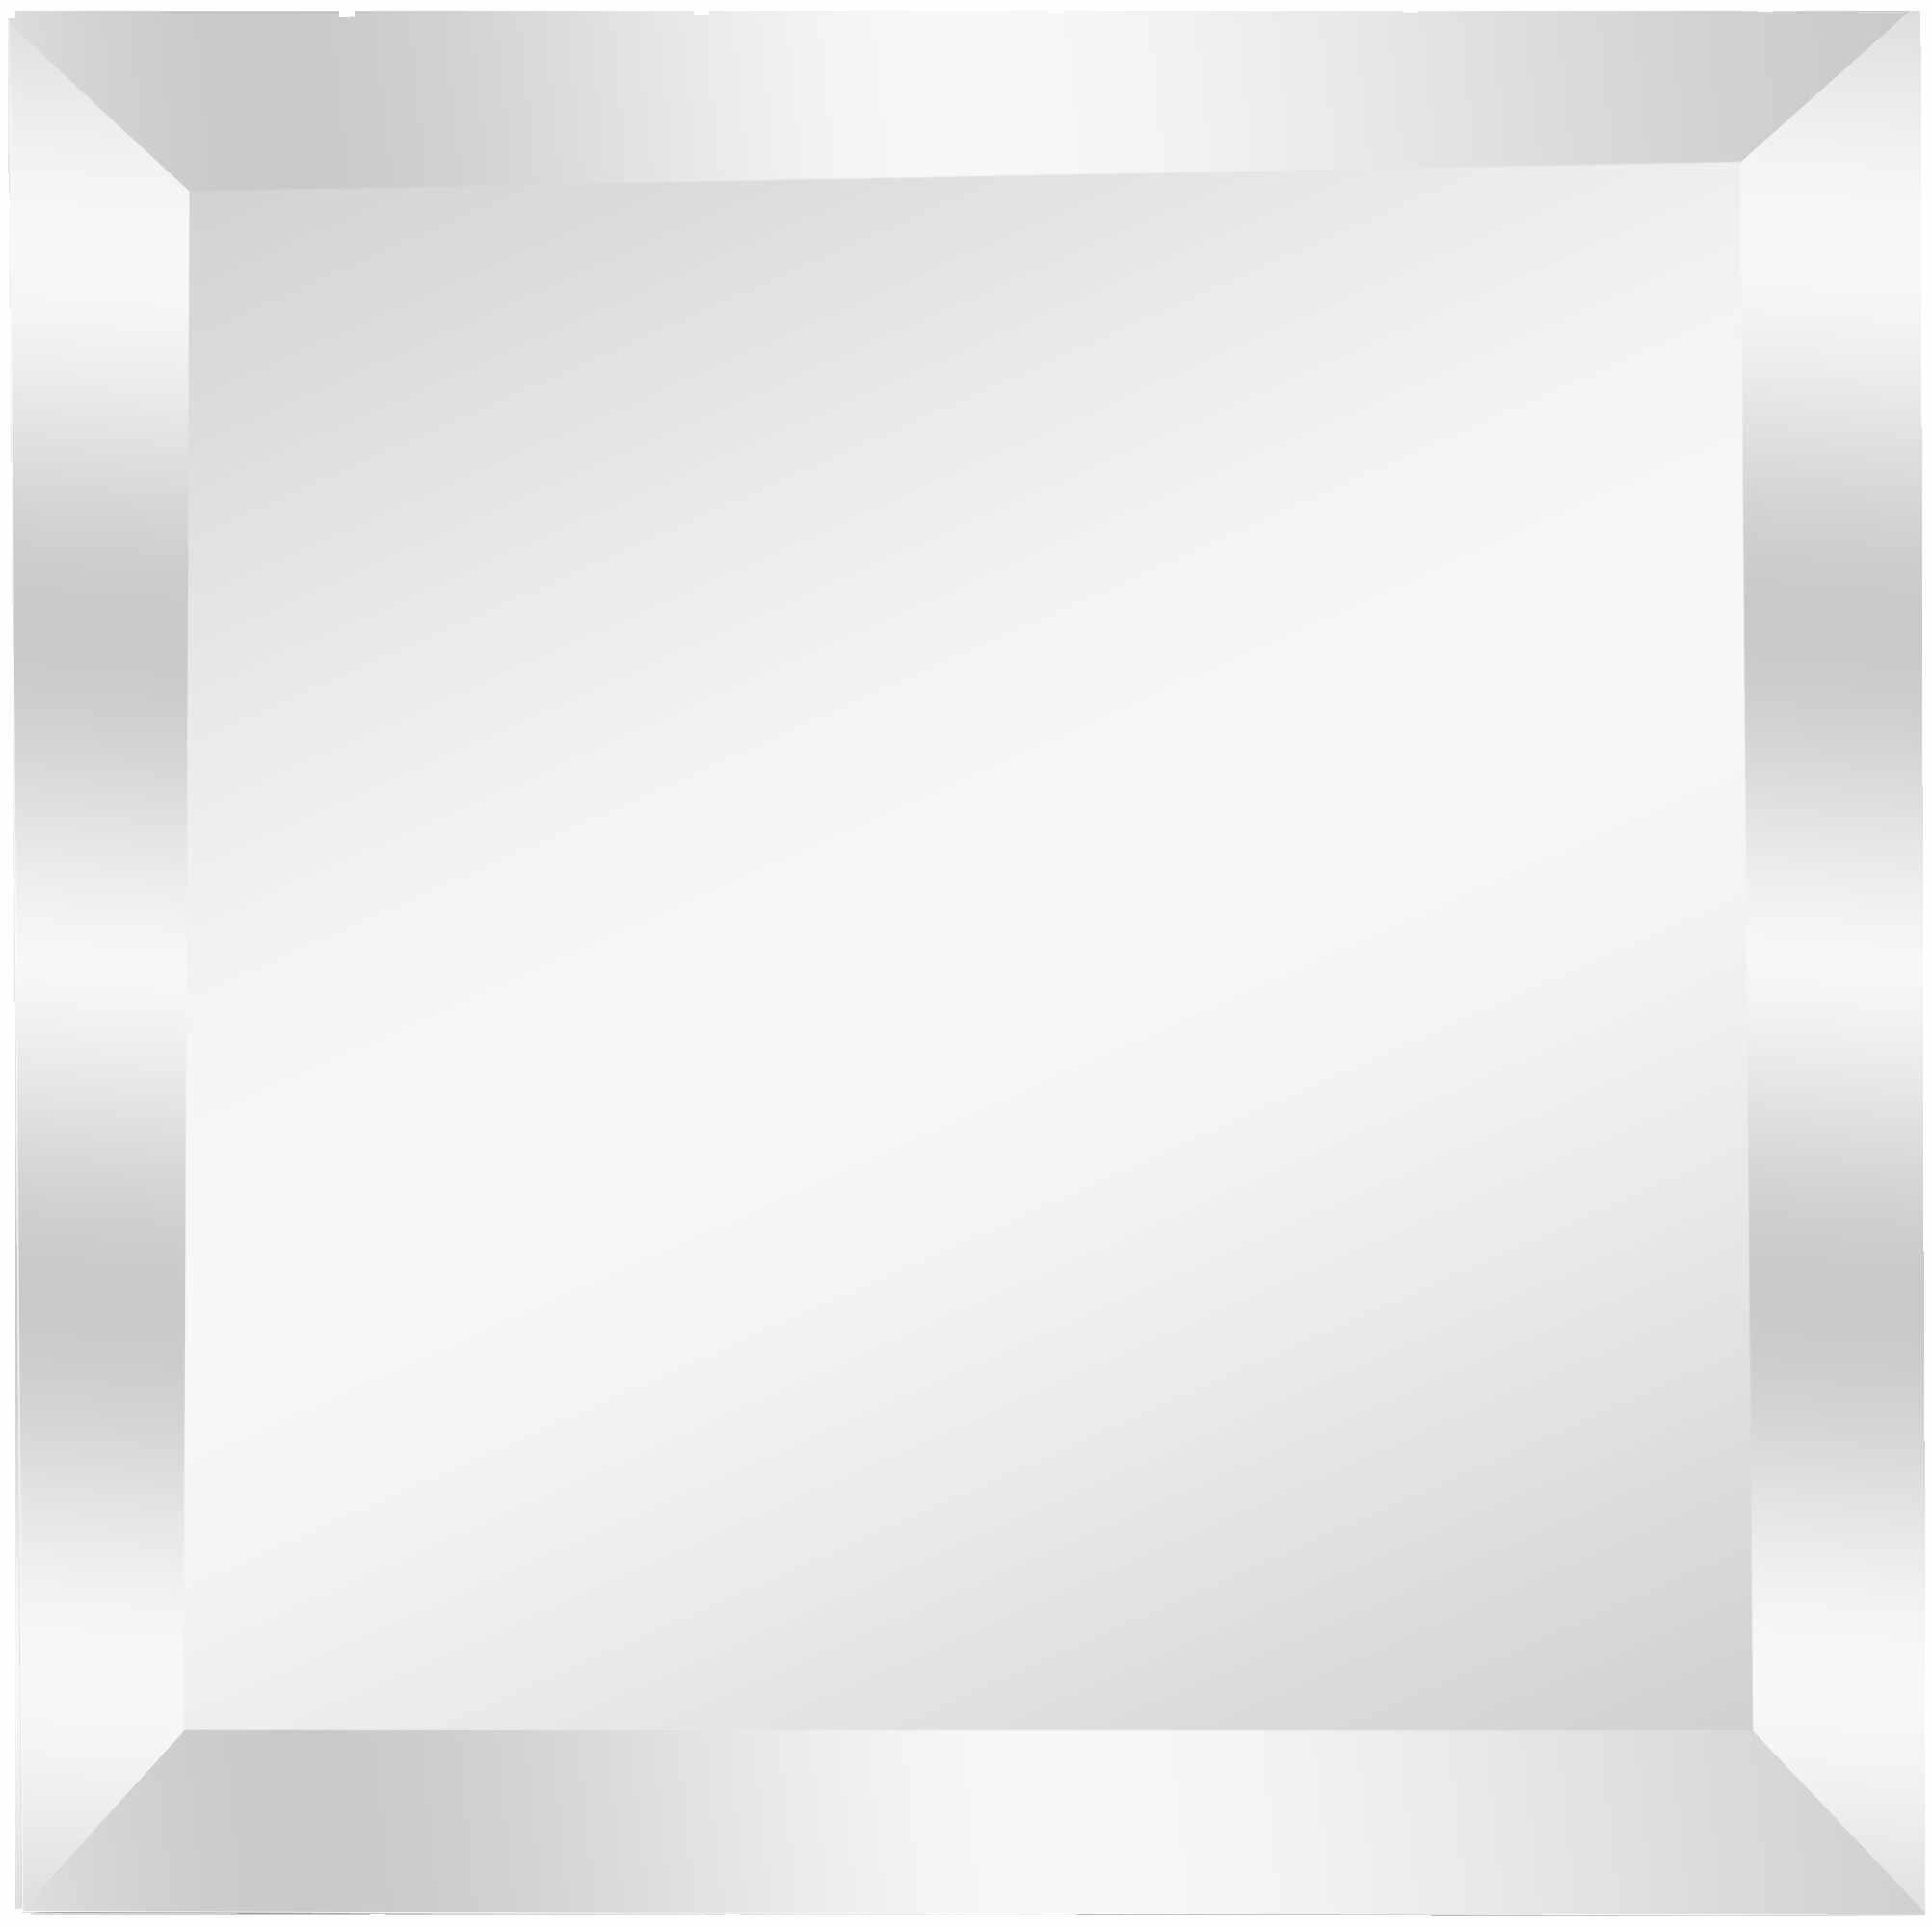 Зеркальная плитка Mirox 3G Sensea NNLM24 квадратная 10x10 см глянцевая цвет серебро 1 шт.